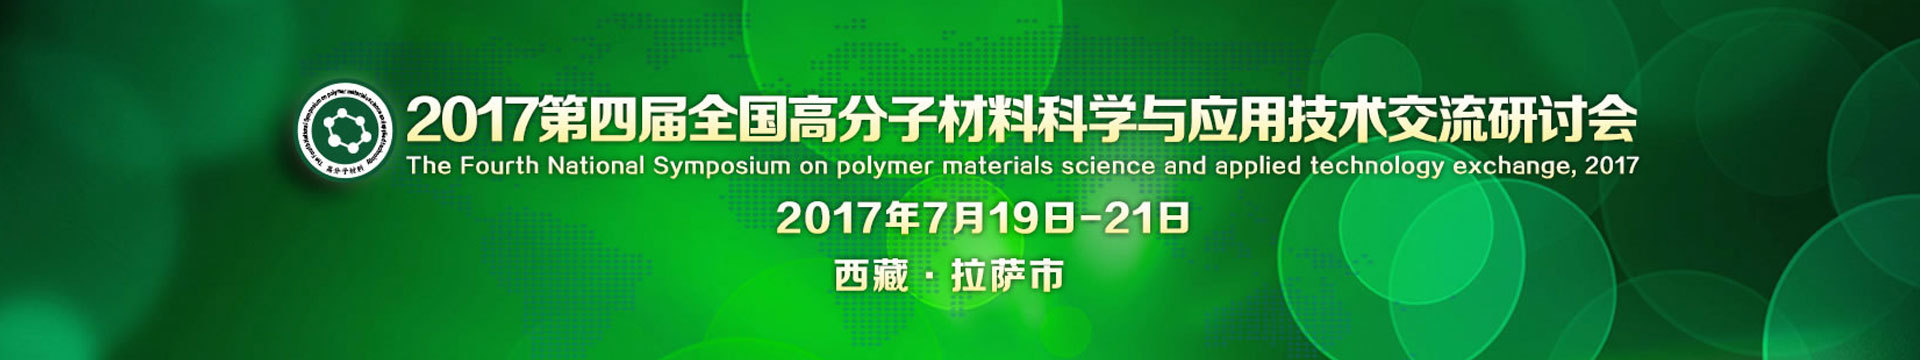 2017第四届全国高分子材料科学与应用技术交流研讨会